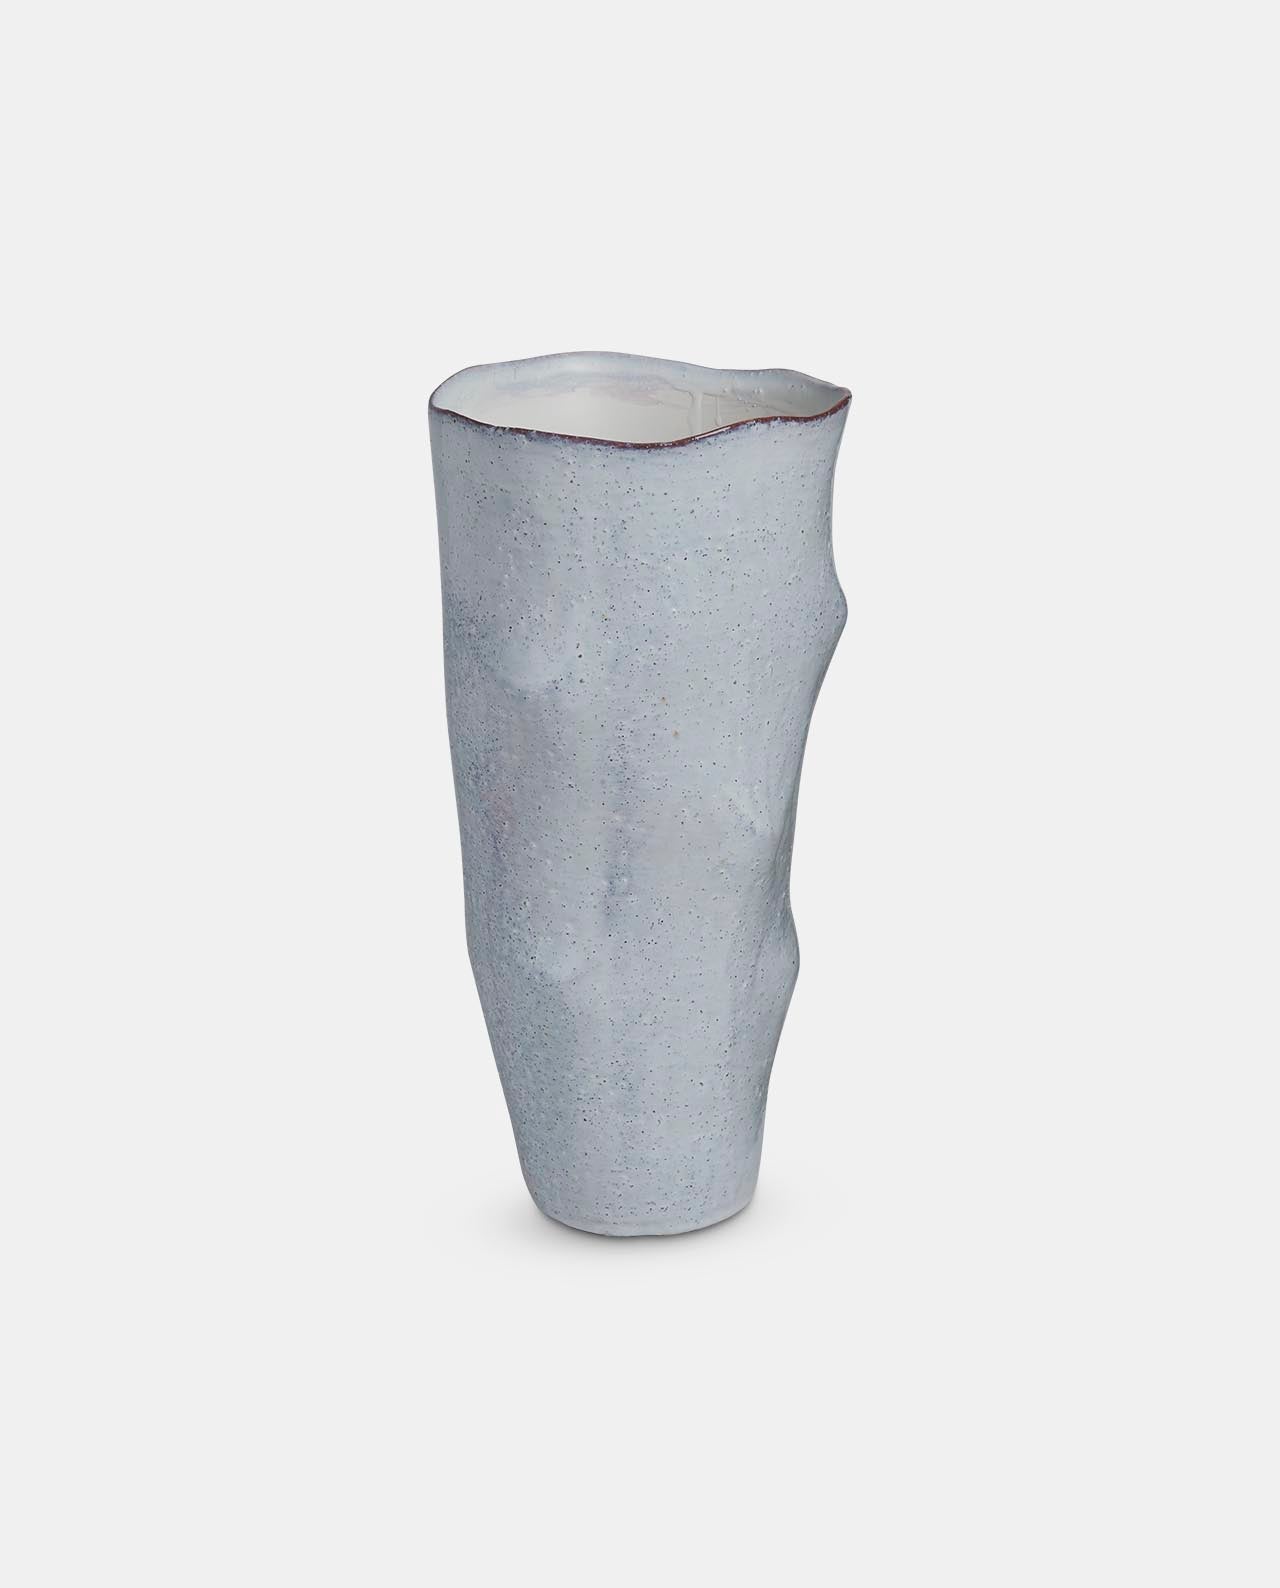 Aged White Ceramic Vase